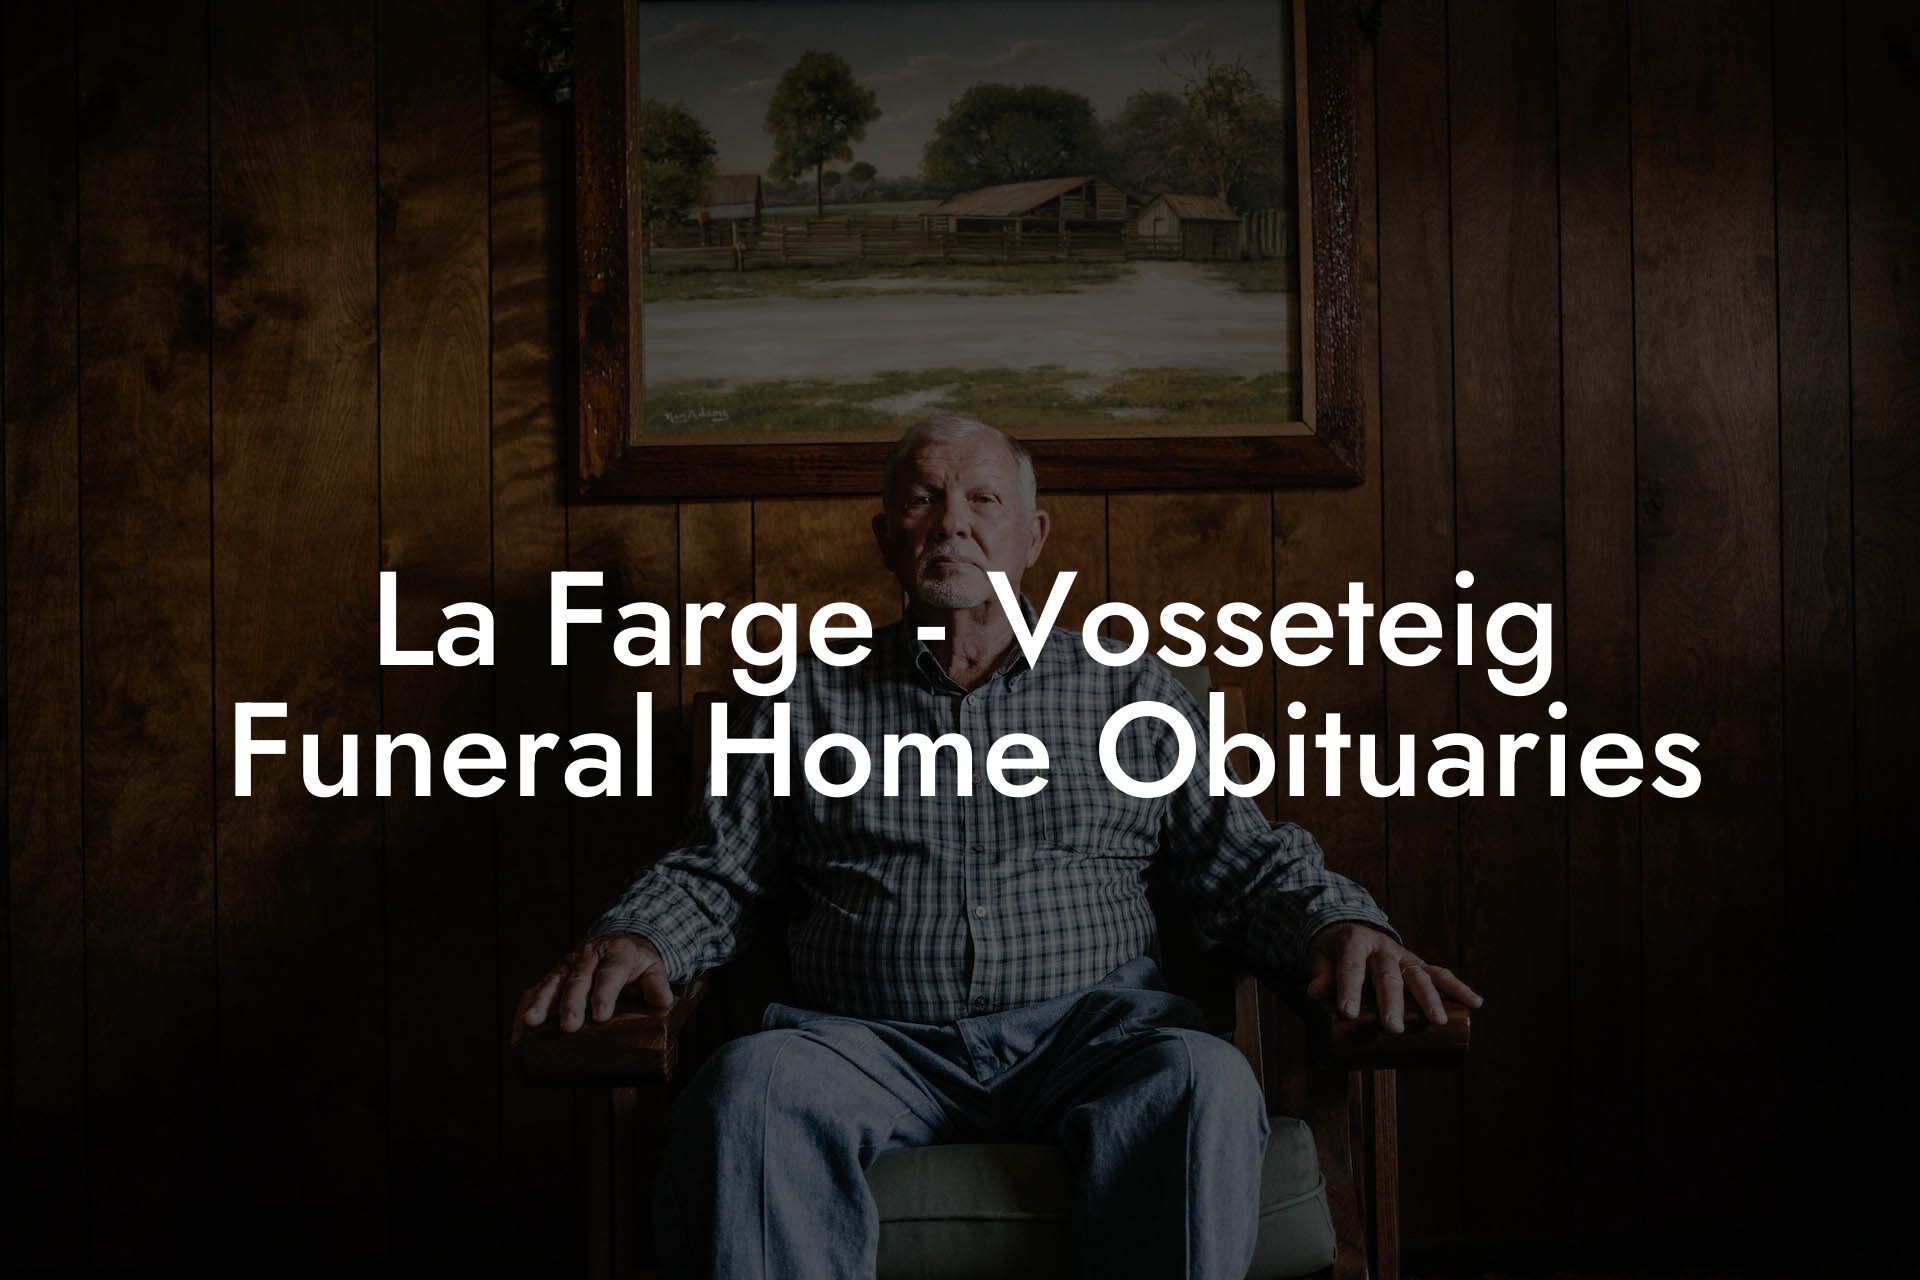 La Farge - Vosseteig Funeral Home Obituaries